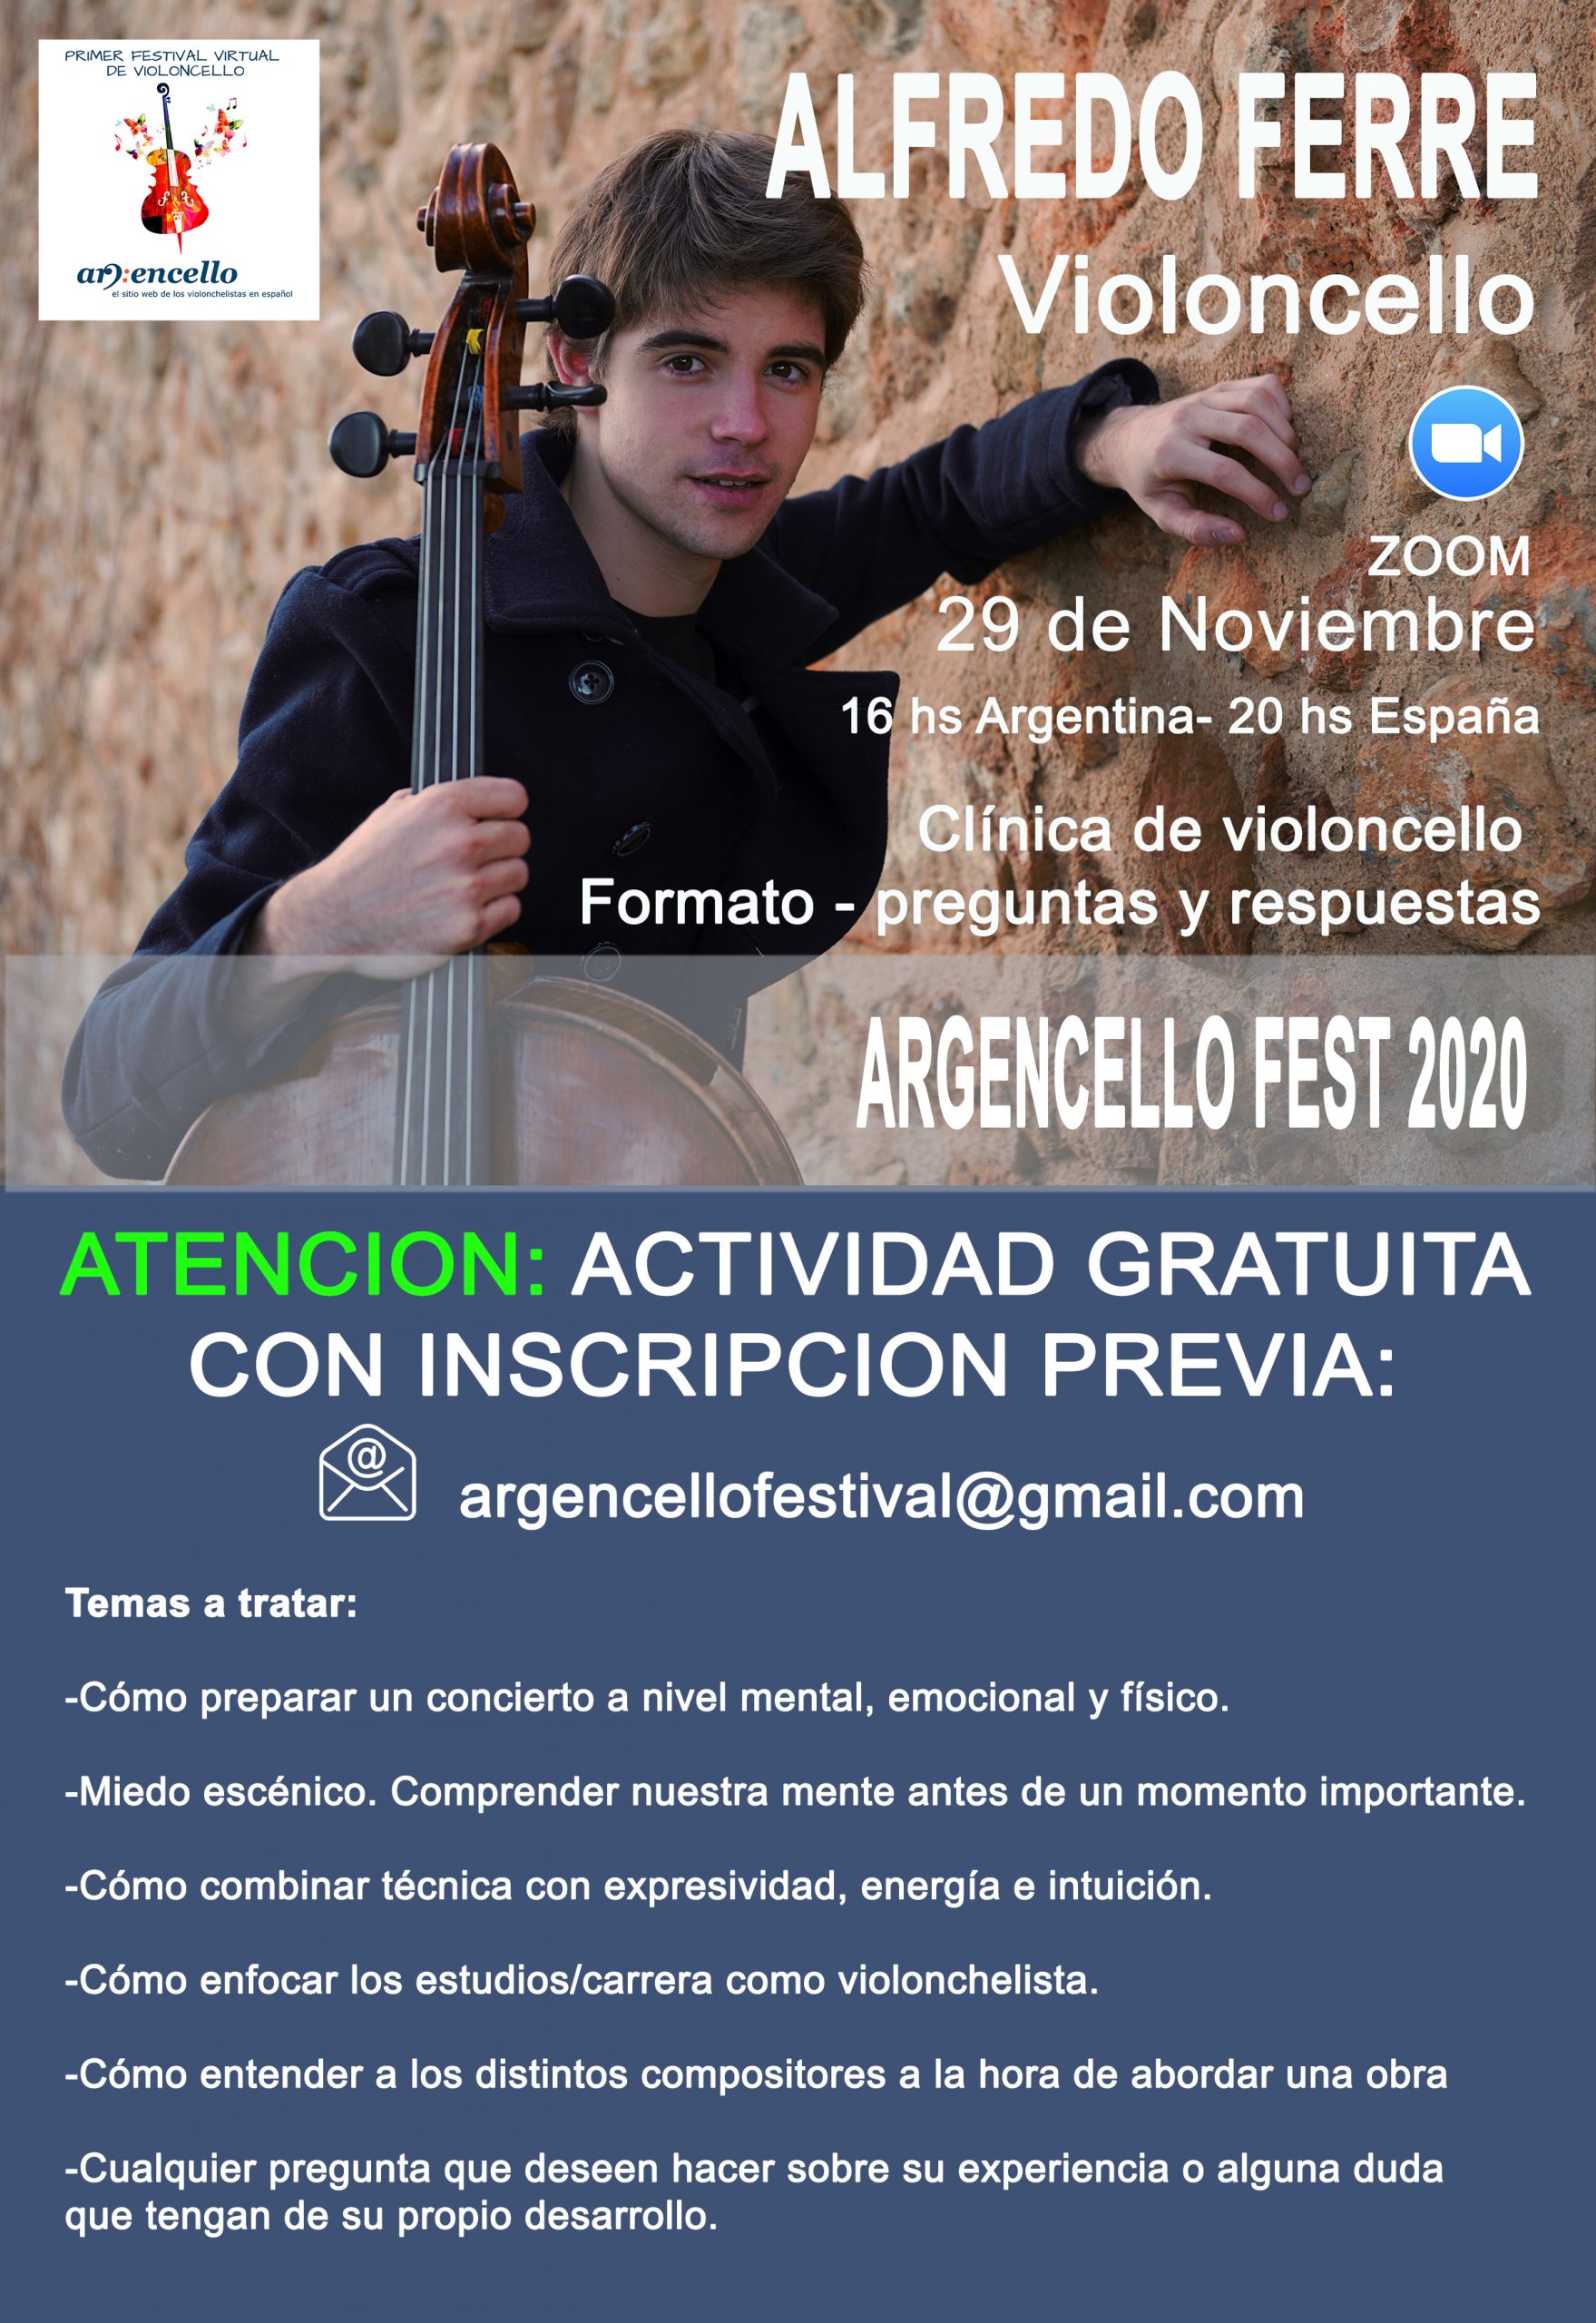 Argencello Fest 2020: Clínica de violoncello a cargo de Alfredo Ferré